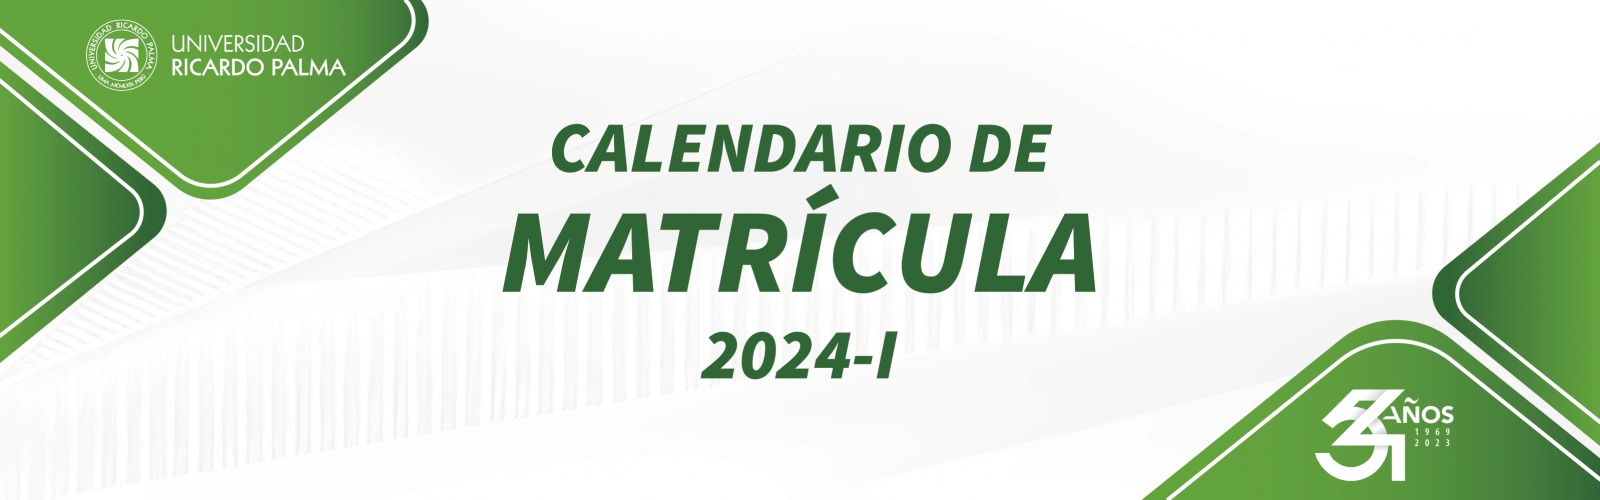 URP CALENDARIO DE MATRÍCULA 2024-I